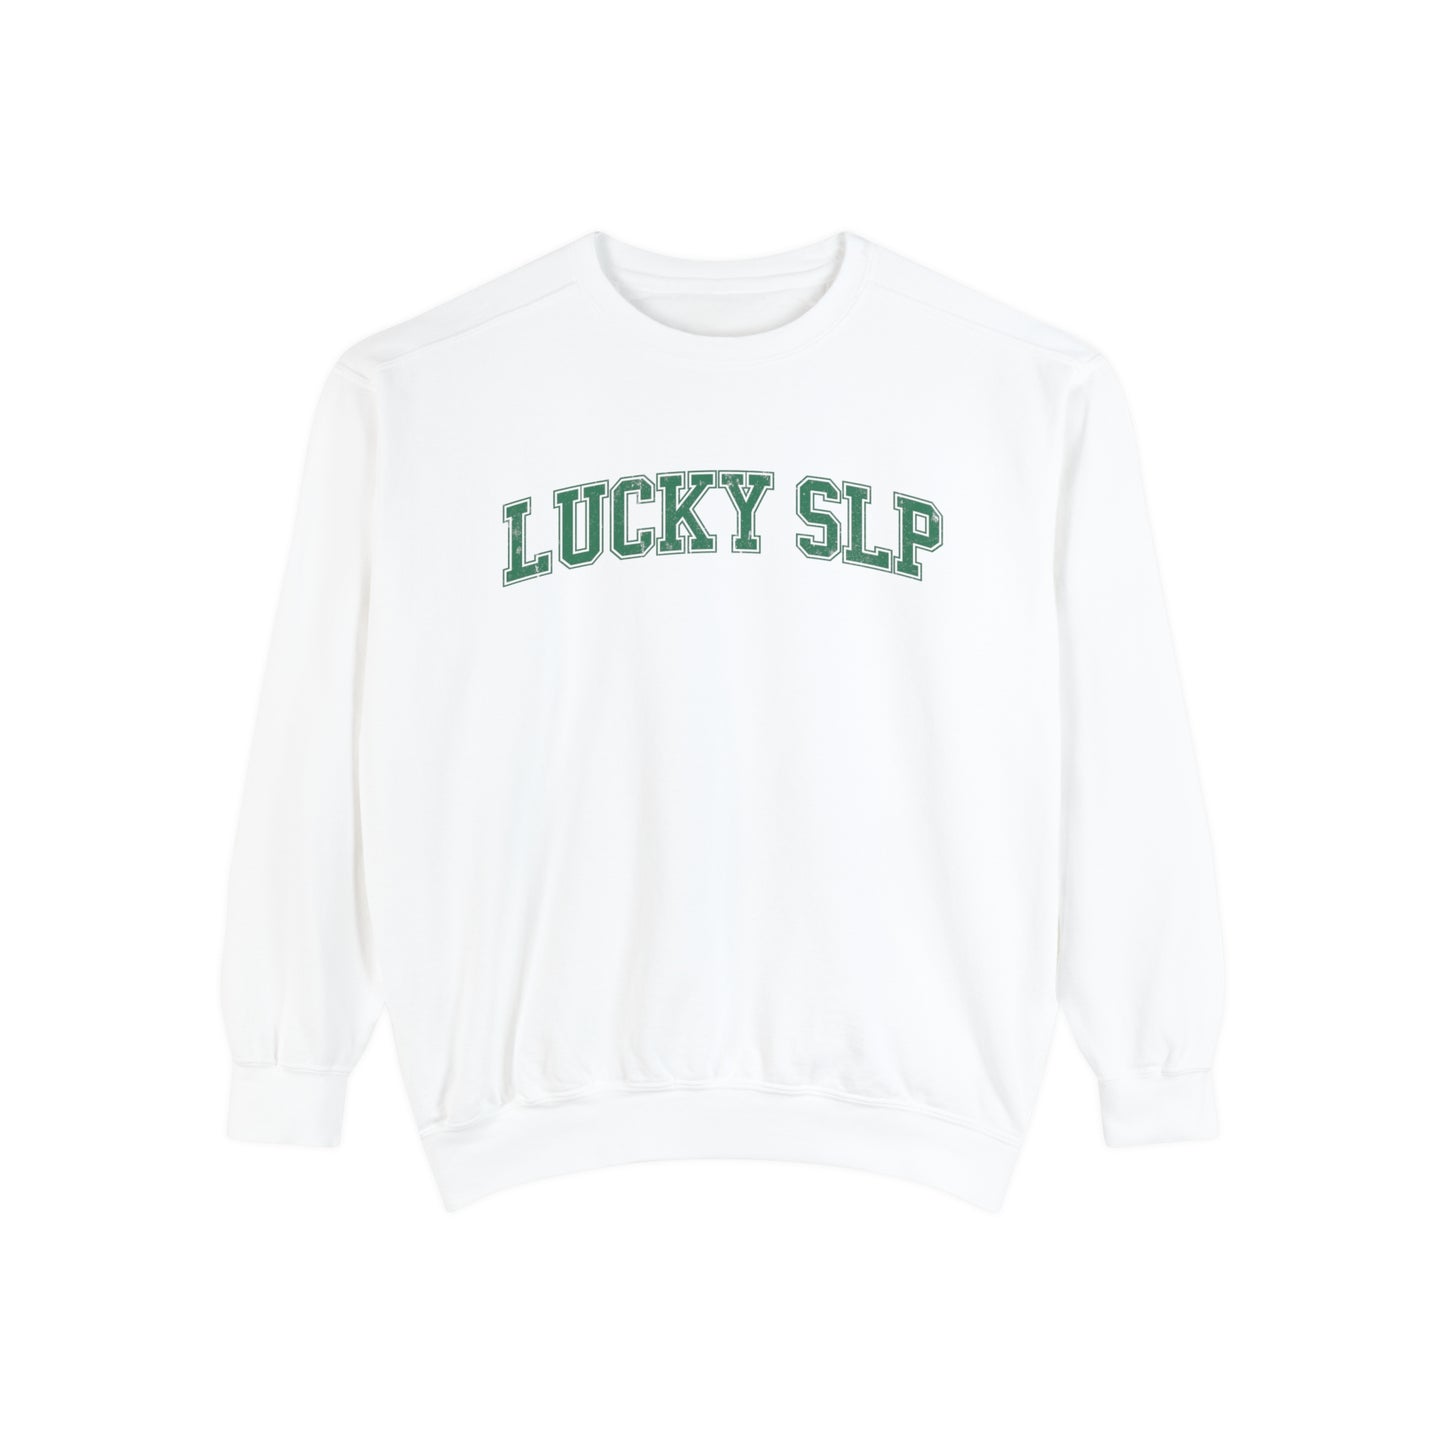 Lucky SLP Distressed Comfort Colors Sweatshirt